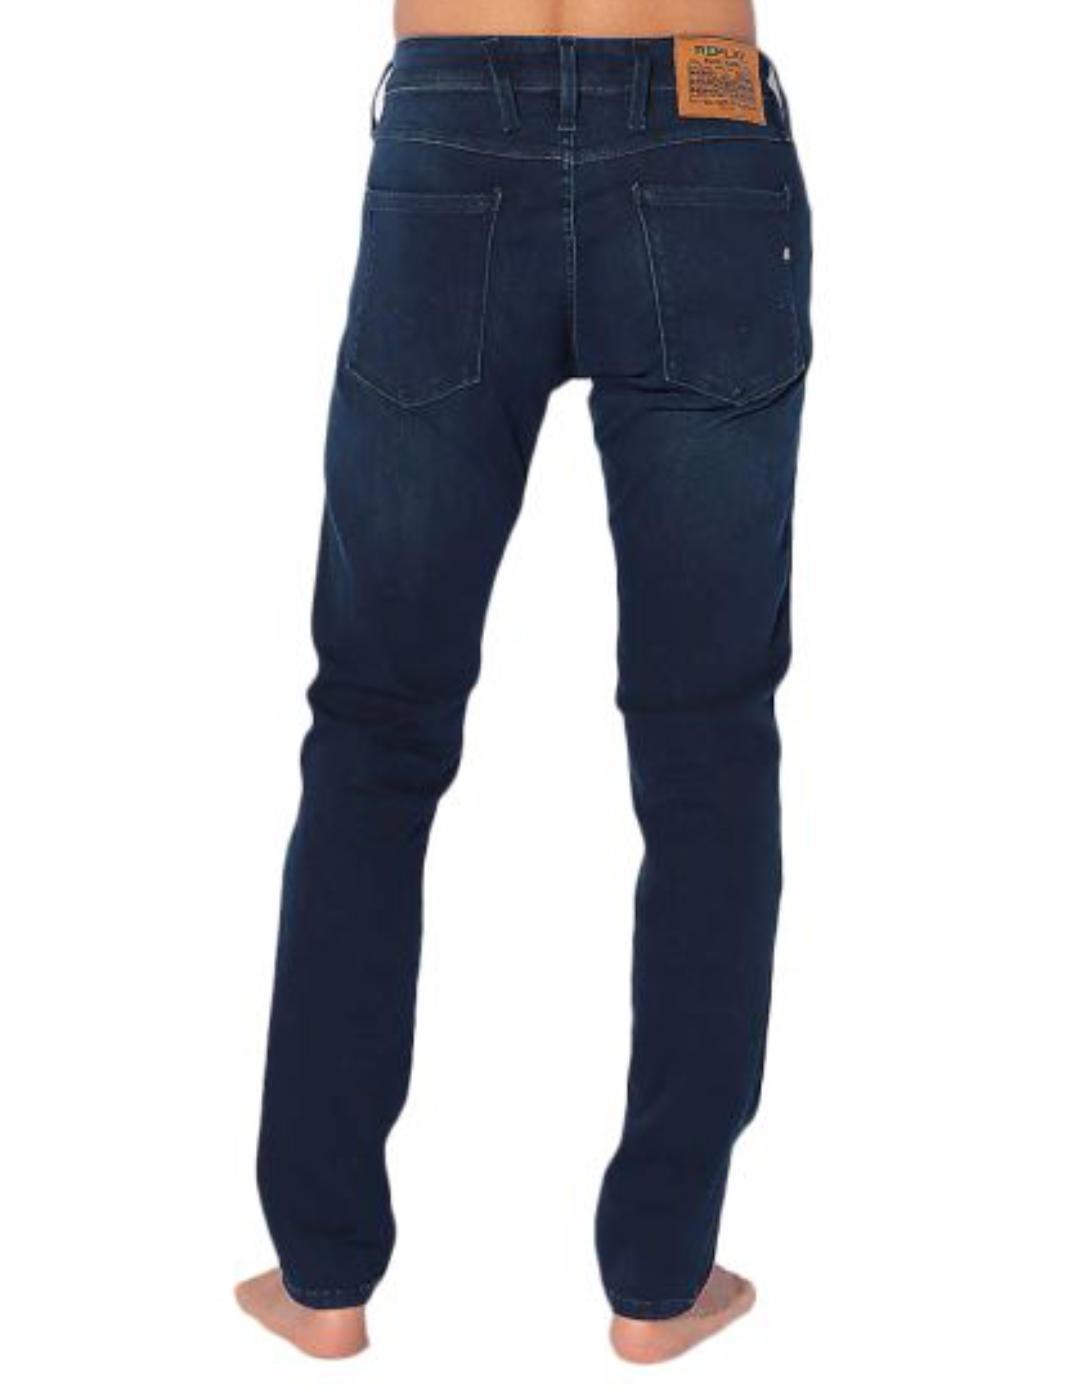 Pantalon Replay azul oscuro para hombre -b